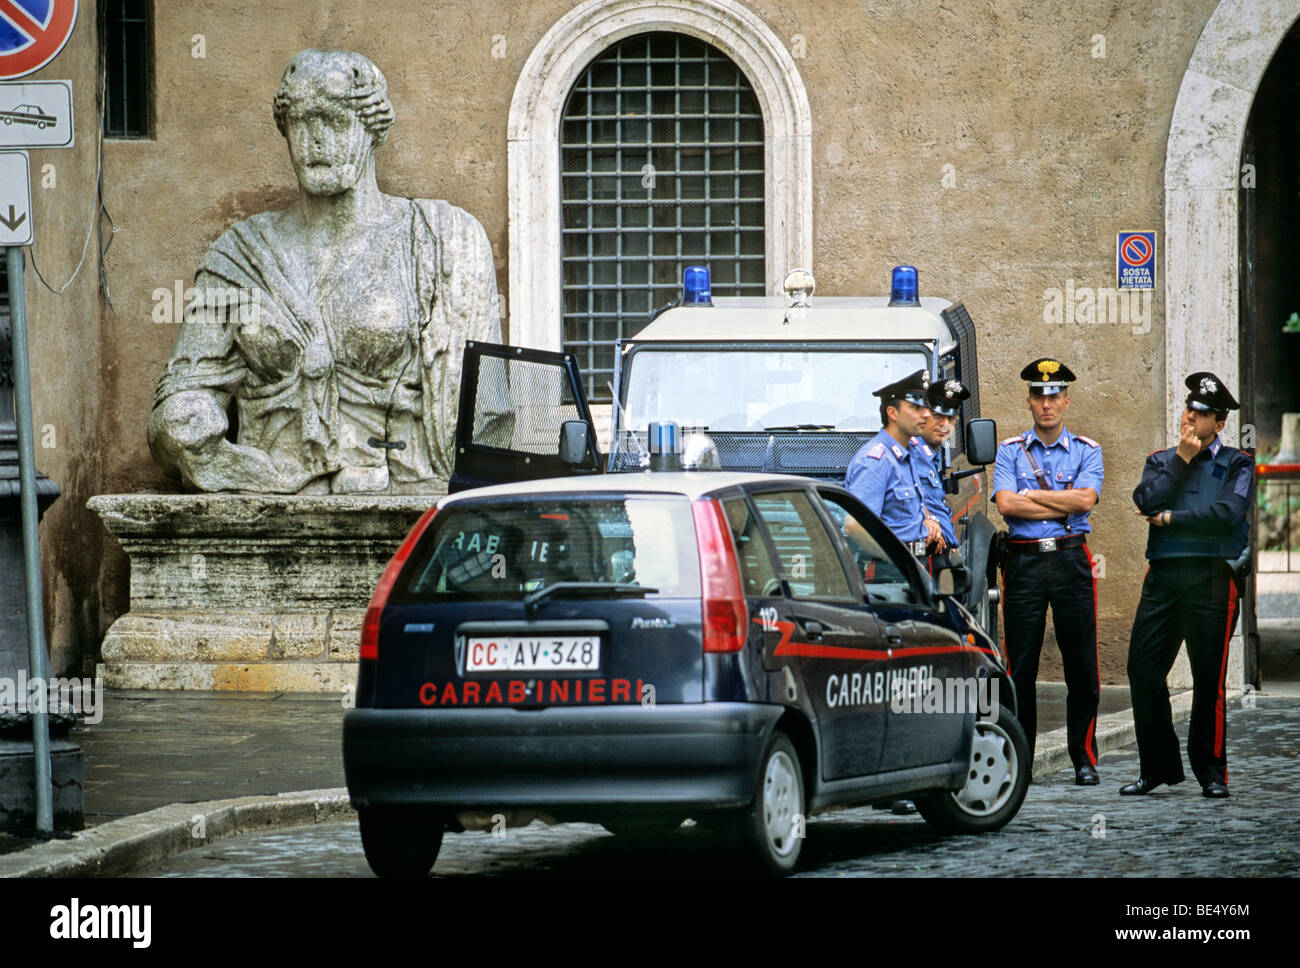 Ancient Roman monumental statue, Carabinieri, Palazzo di San Marco, Piazza Venezia, Rome, Lazio, Italy, Europe Stock Photo